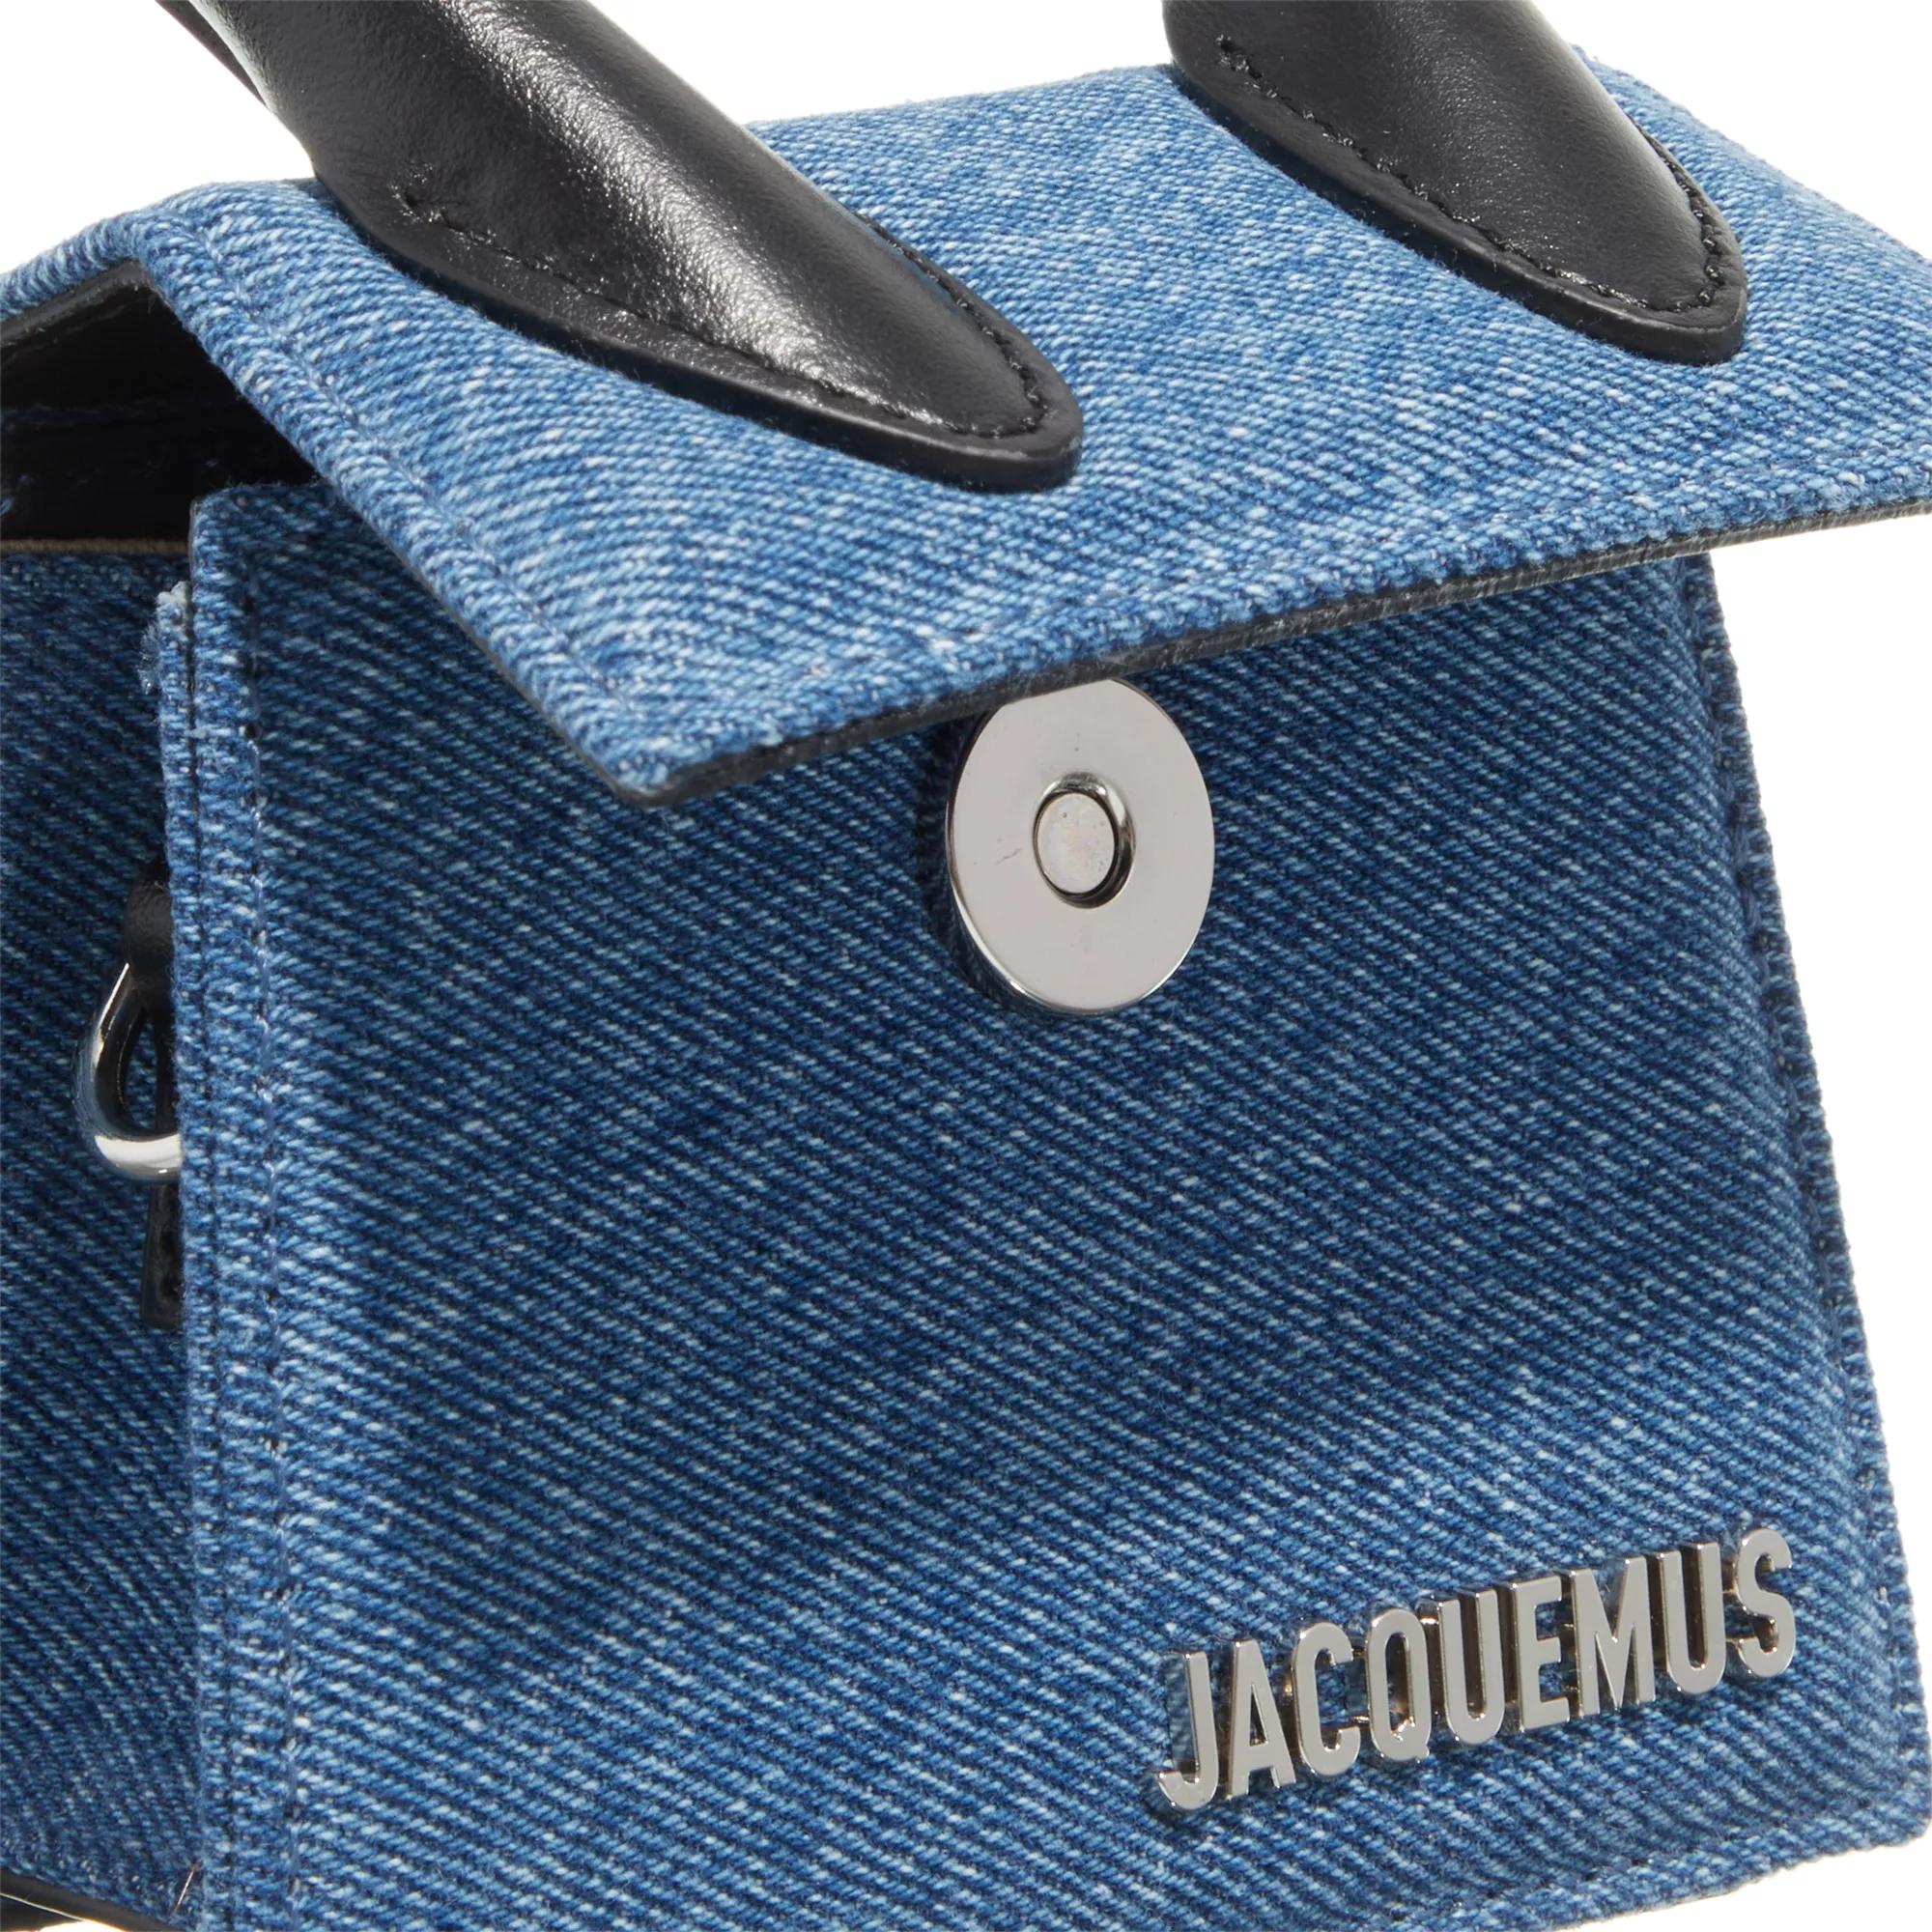 Jacquemus Crossbody bags Le Chiquito in blauw